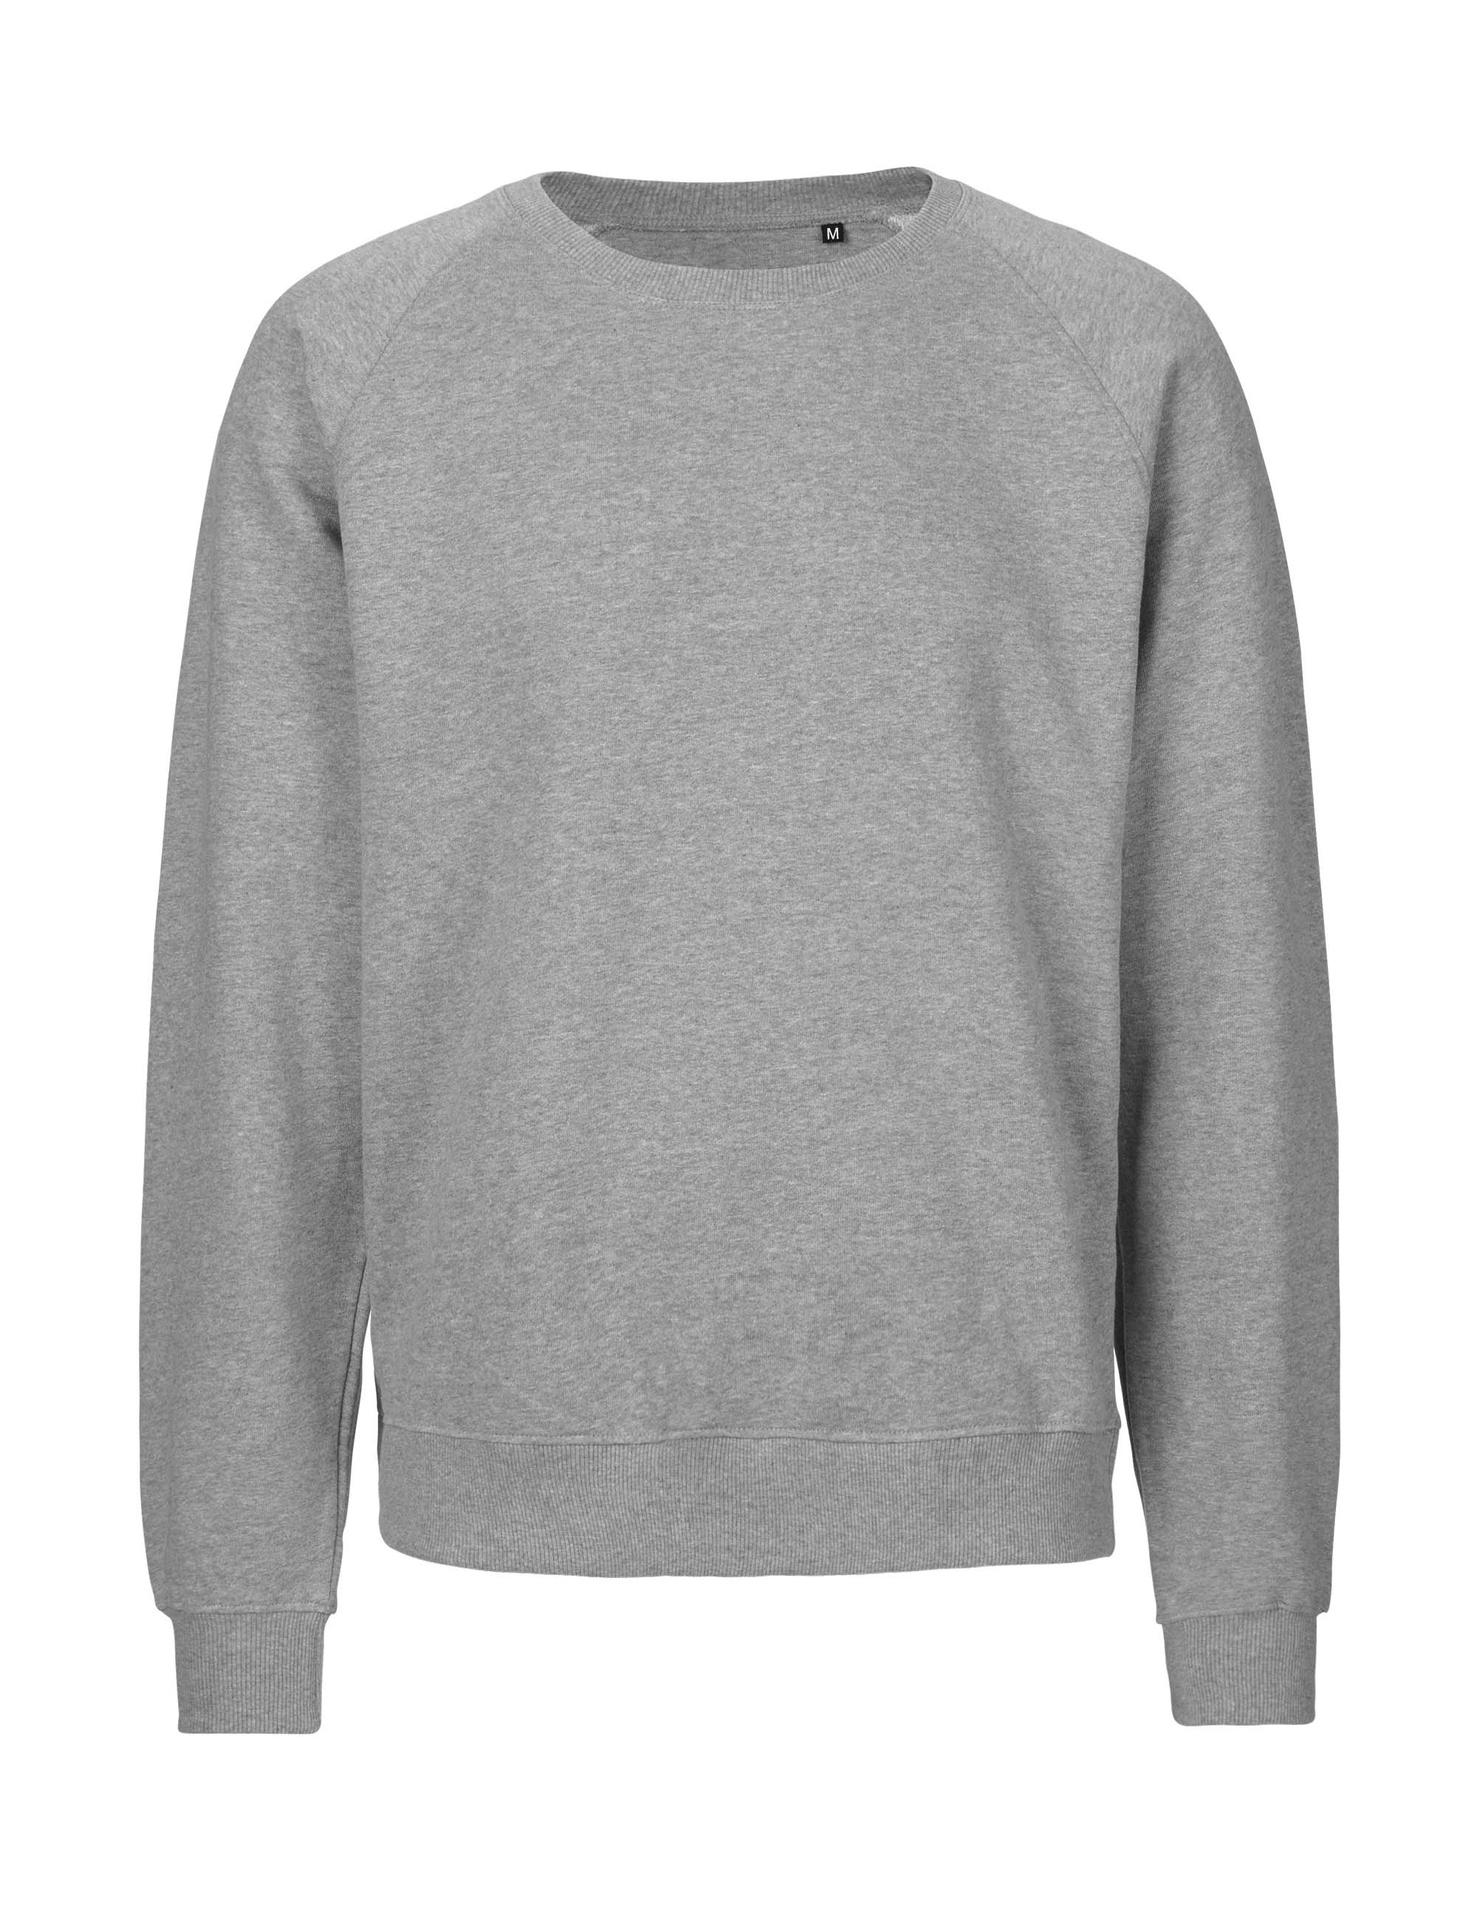 [PR/06027] Unisex Tiger Cotton Sweatshirt (Sport Grey 21, S)